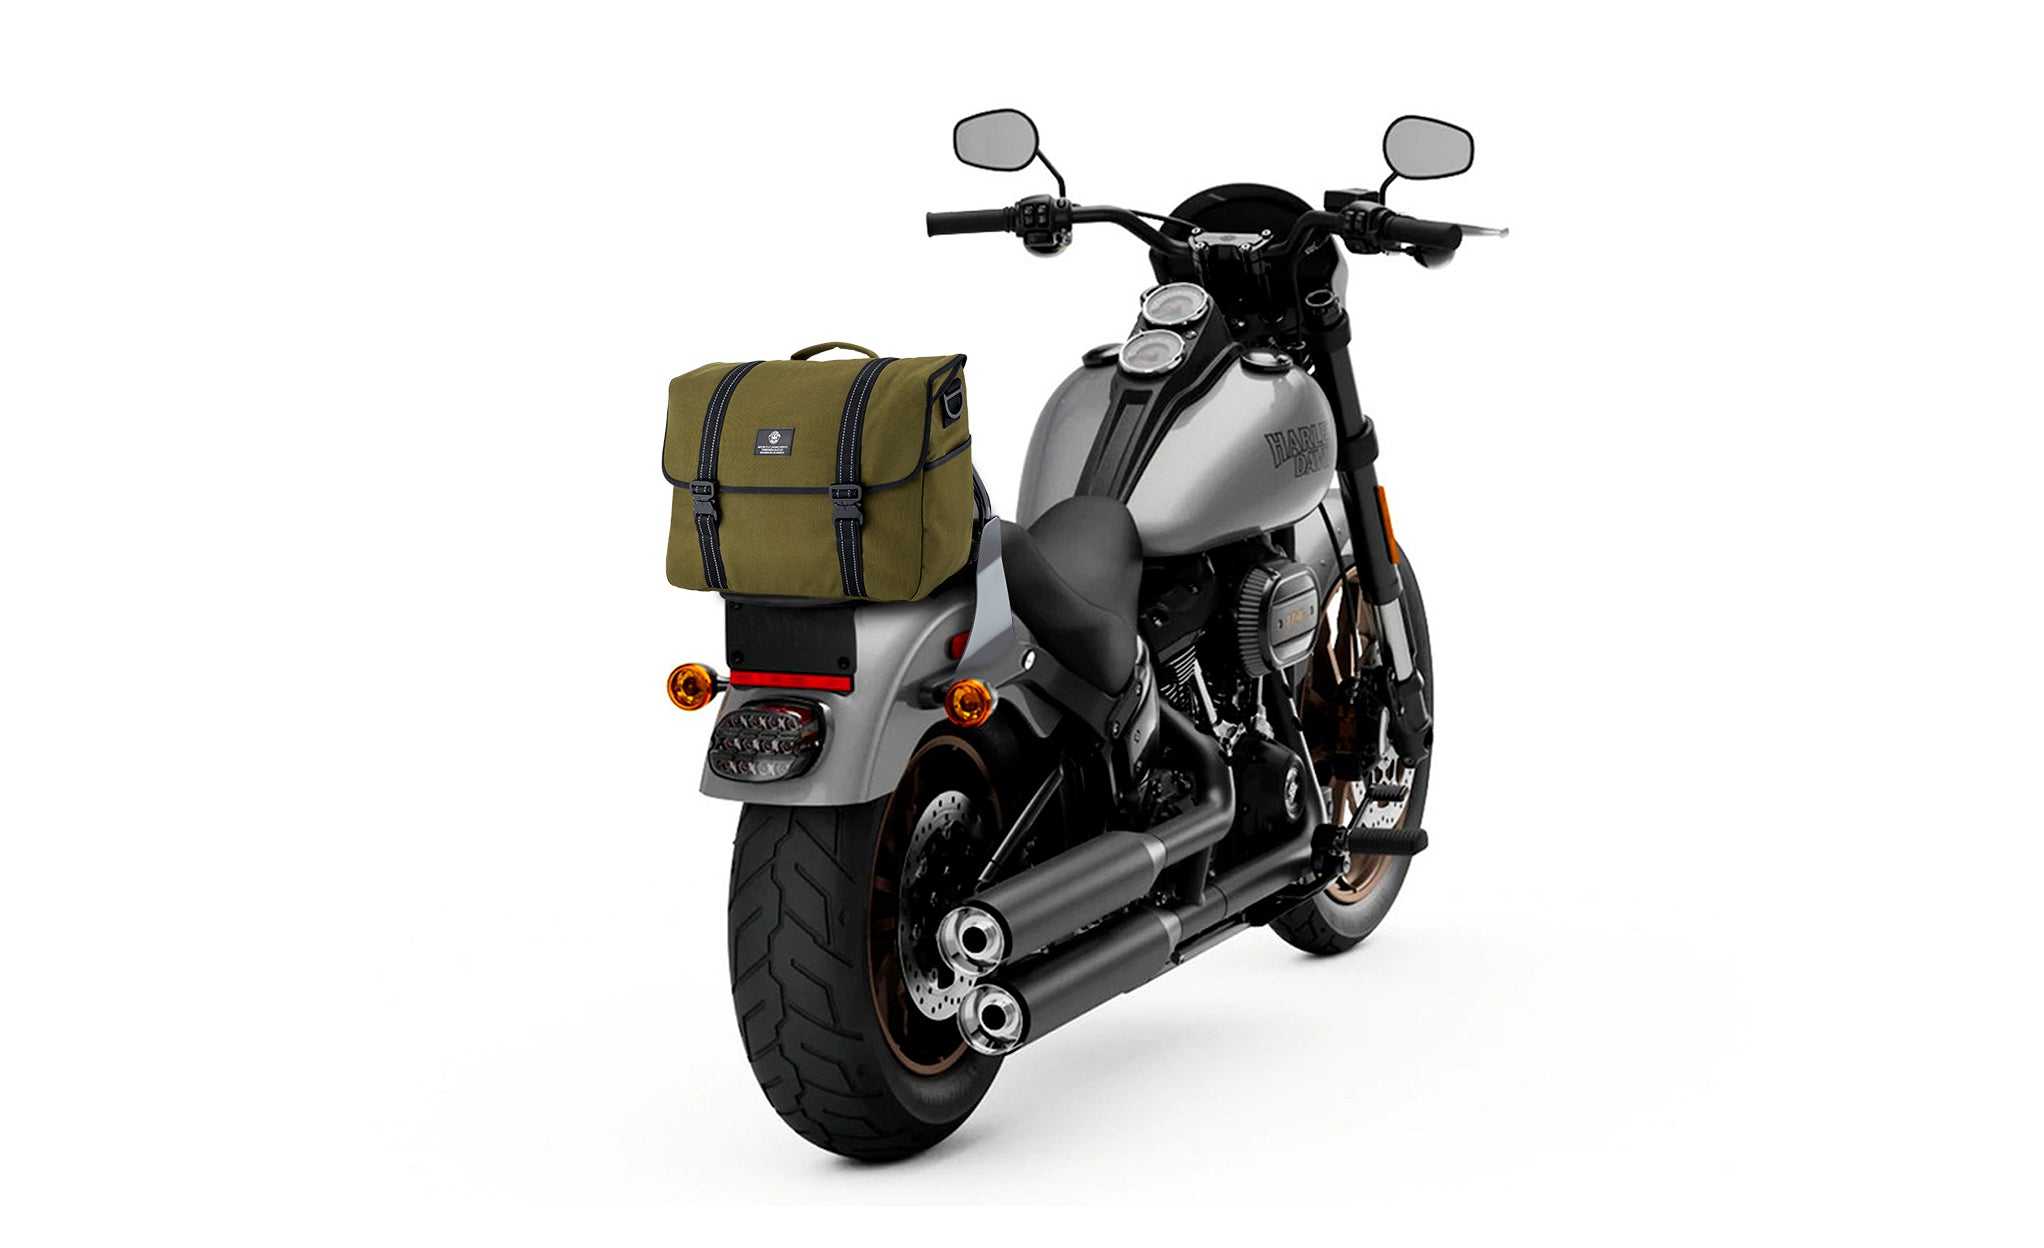 Viking Duo-tone Medium Indian Motorcycle Messenger Bag Green/Black Bag on Bike View @expand